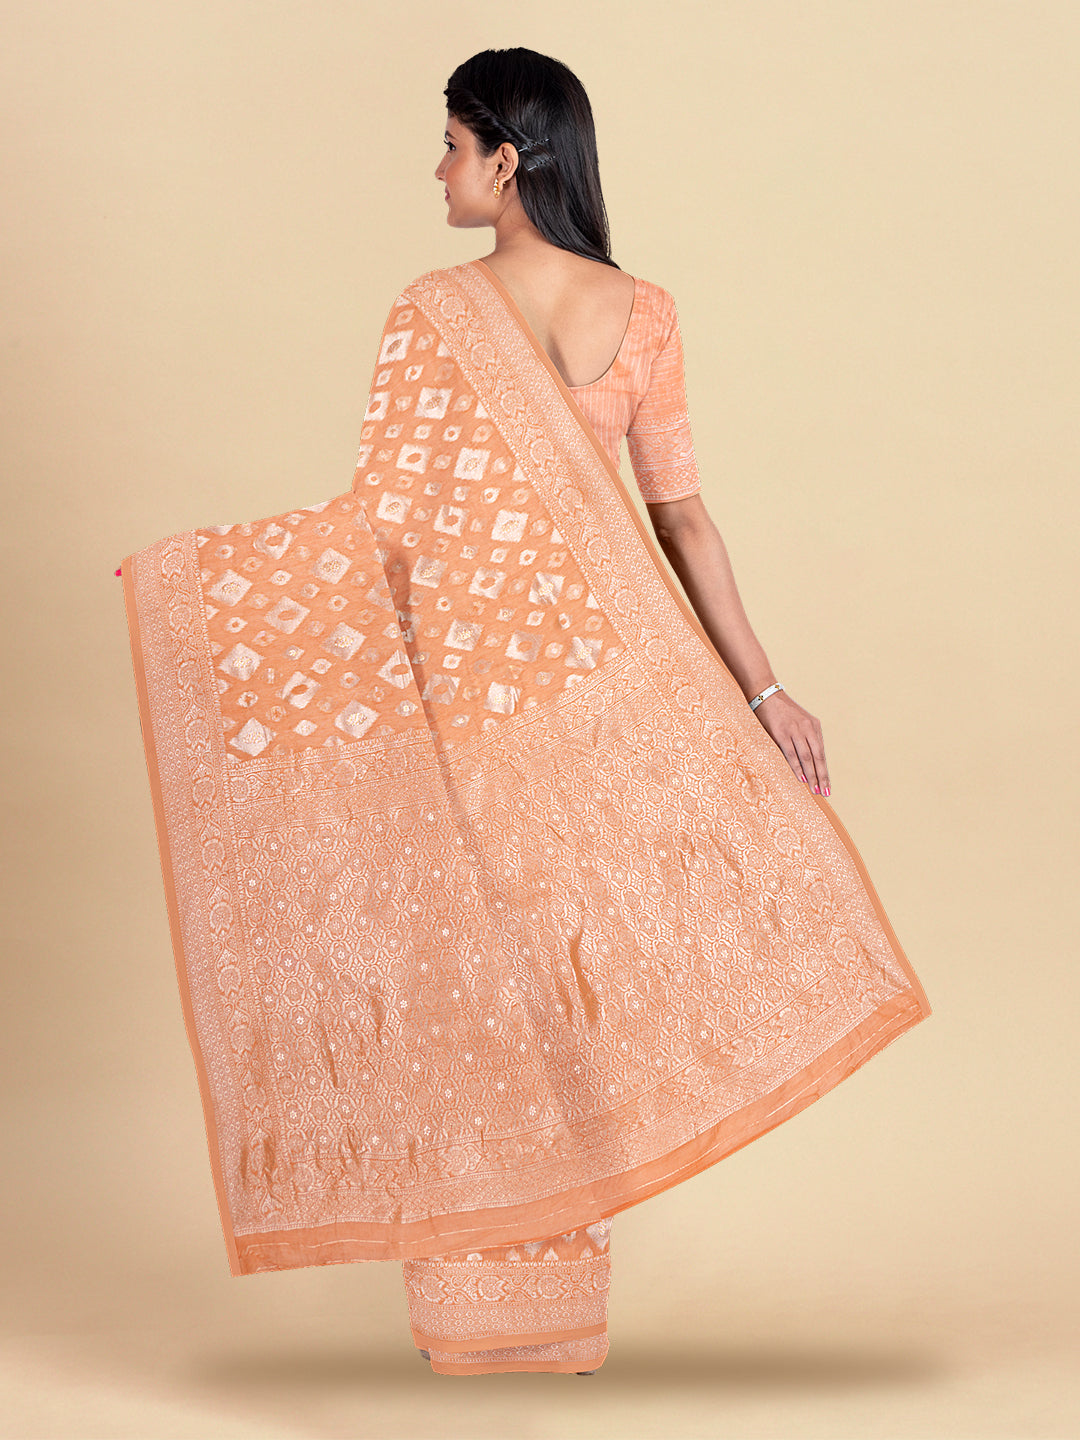 Womens Elegant Semi Cotton Orange With Sliver Jari Saree SCS41